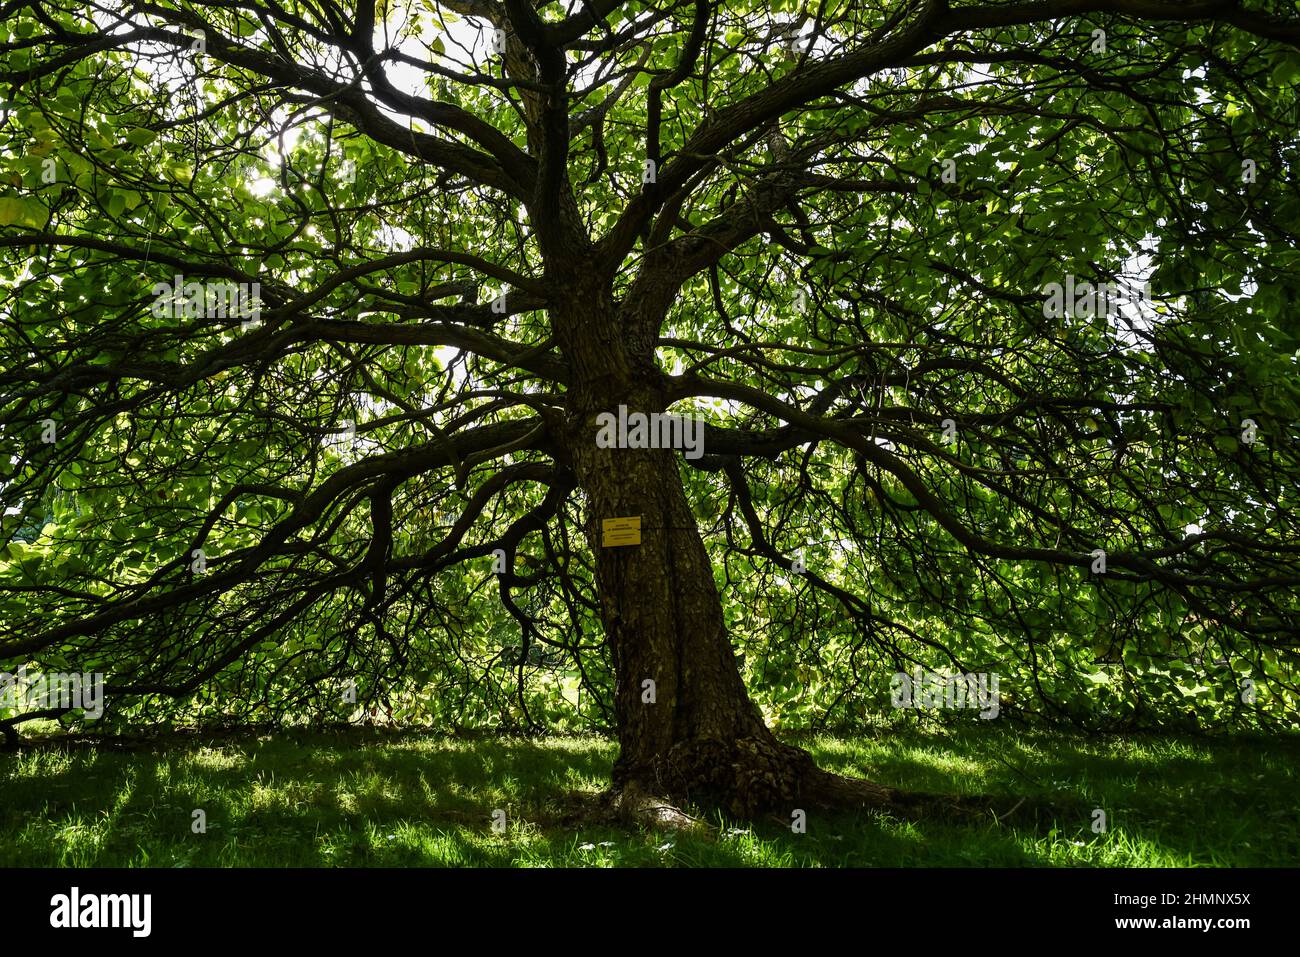 Gran árbol catalpa situado en el jardín botánico nacional de Bélgica Foto de stock